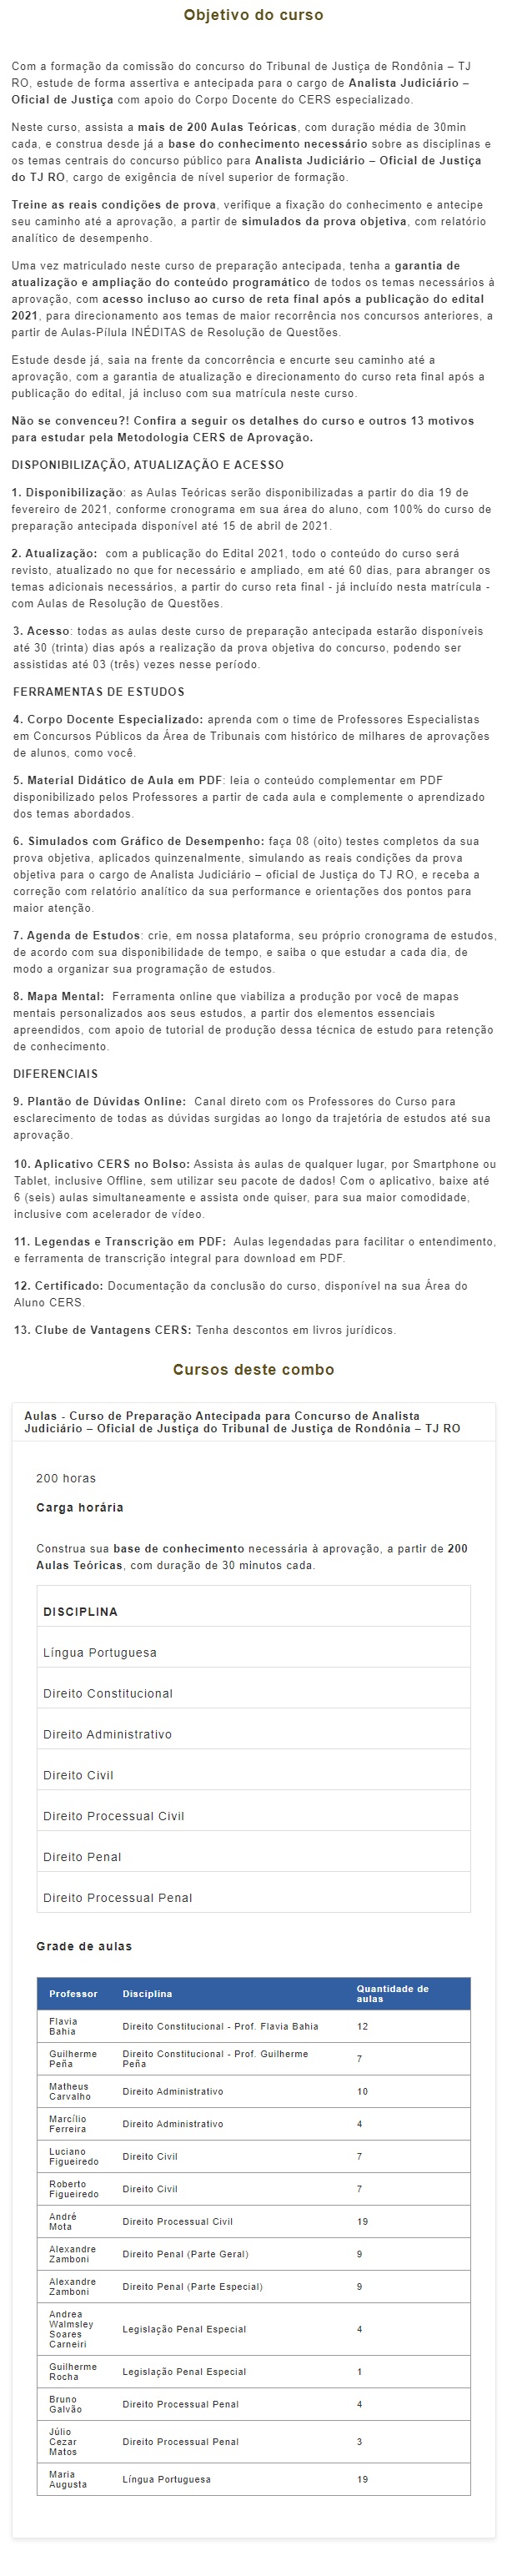 TJ RO - Analista Judiciário e Oficial de Justiça (CERS 2021) Tribunal de Justiça de Rondônia 4